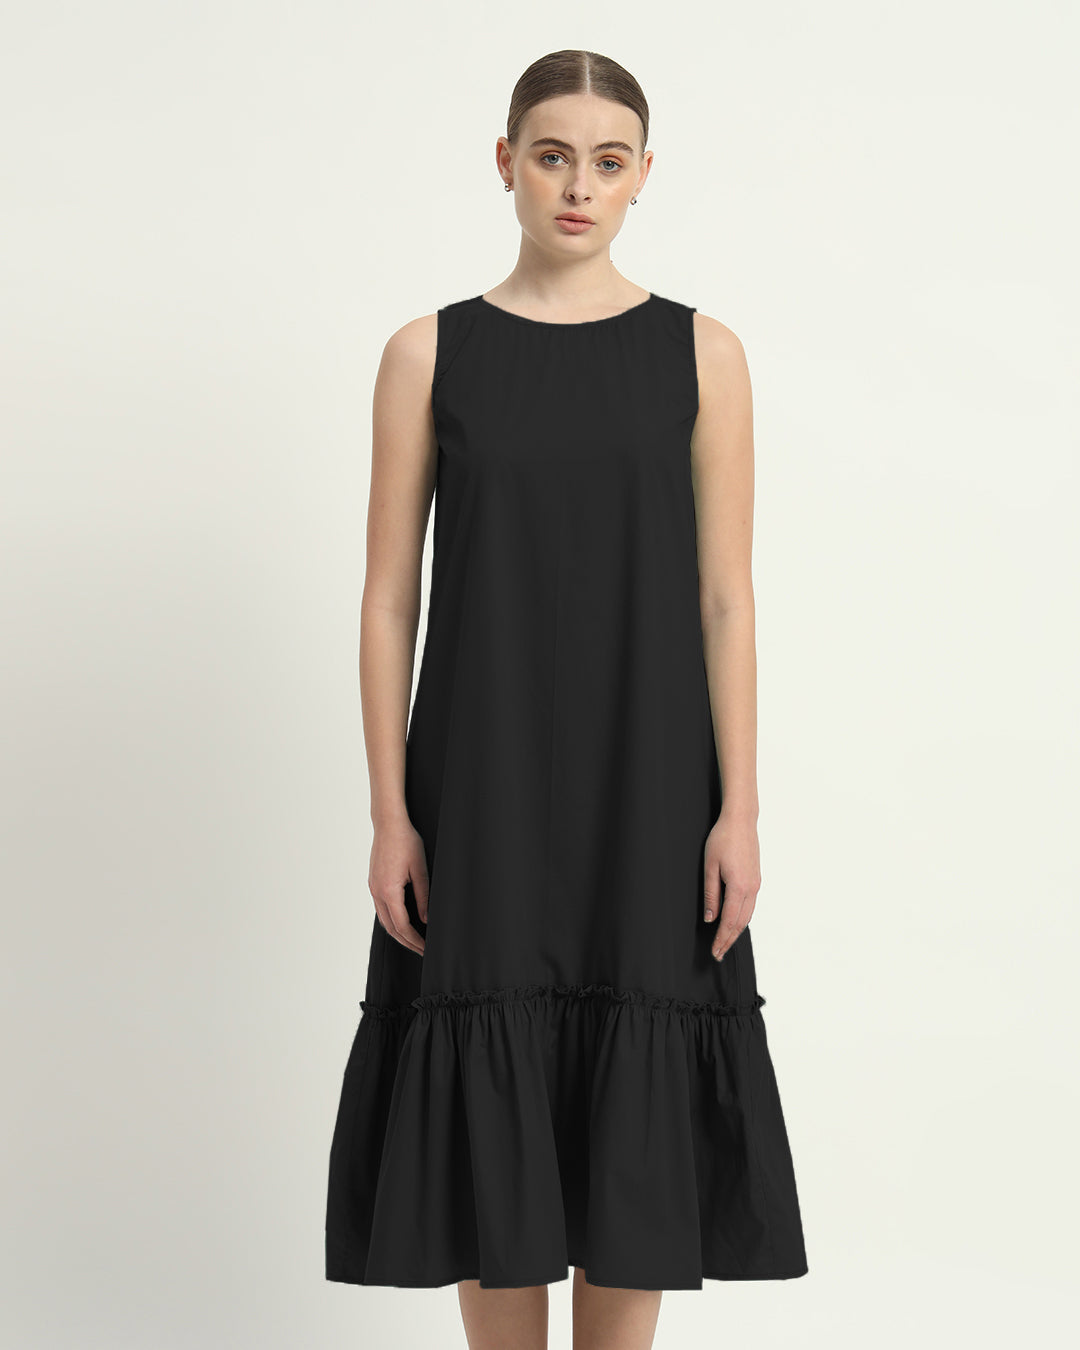 The Millis Noir Cotton Dress